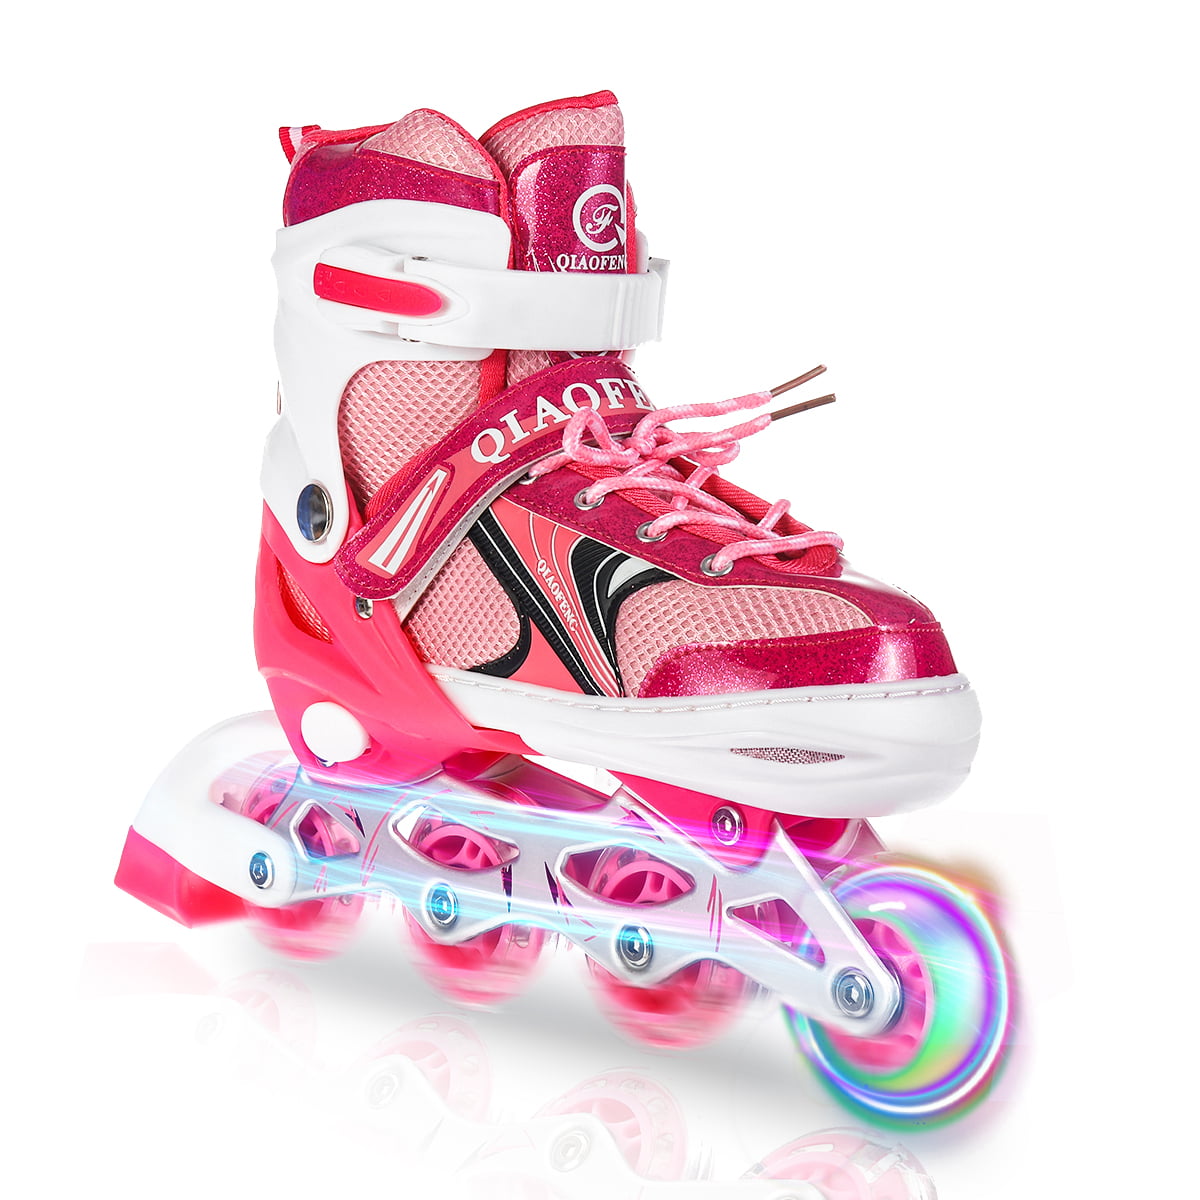 Details about   Adjustable Inline Skates Roller Blades Adult Size 8-10.5 Breathable Adult b 204 